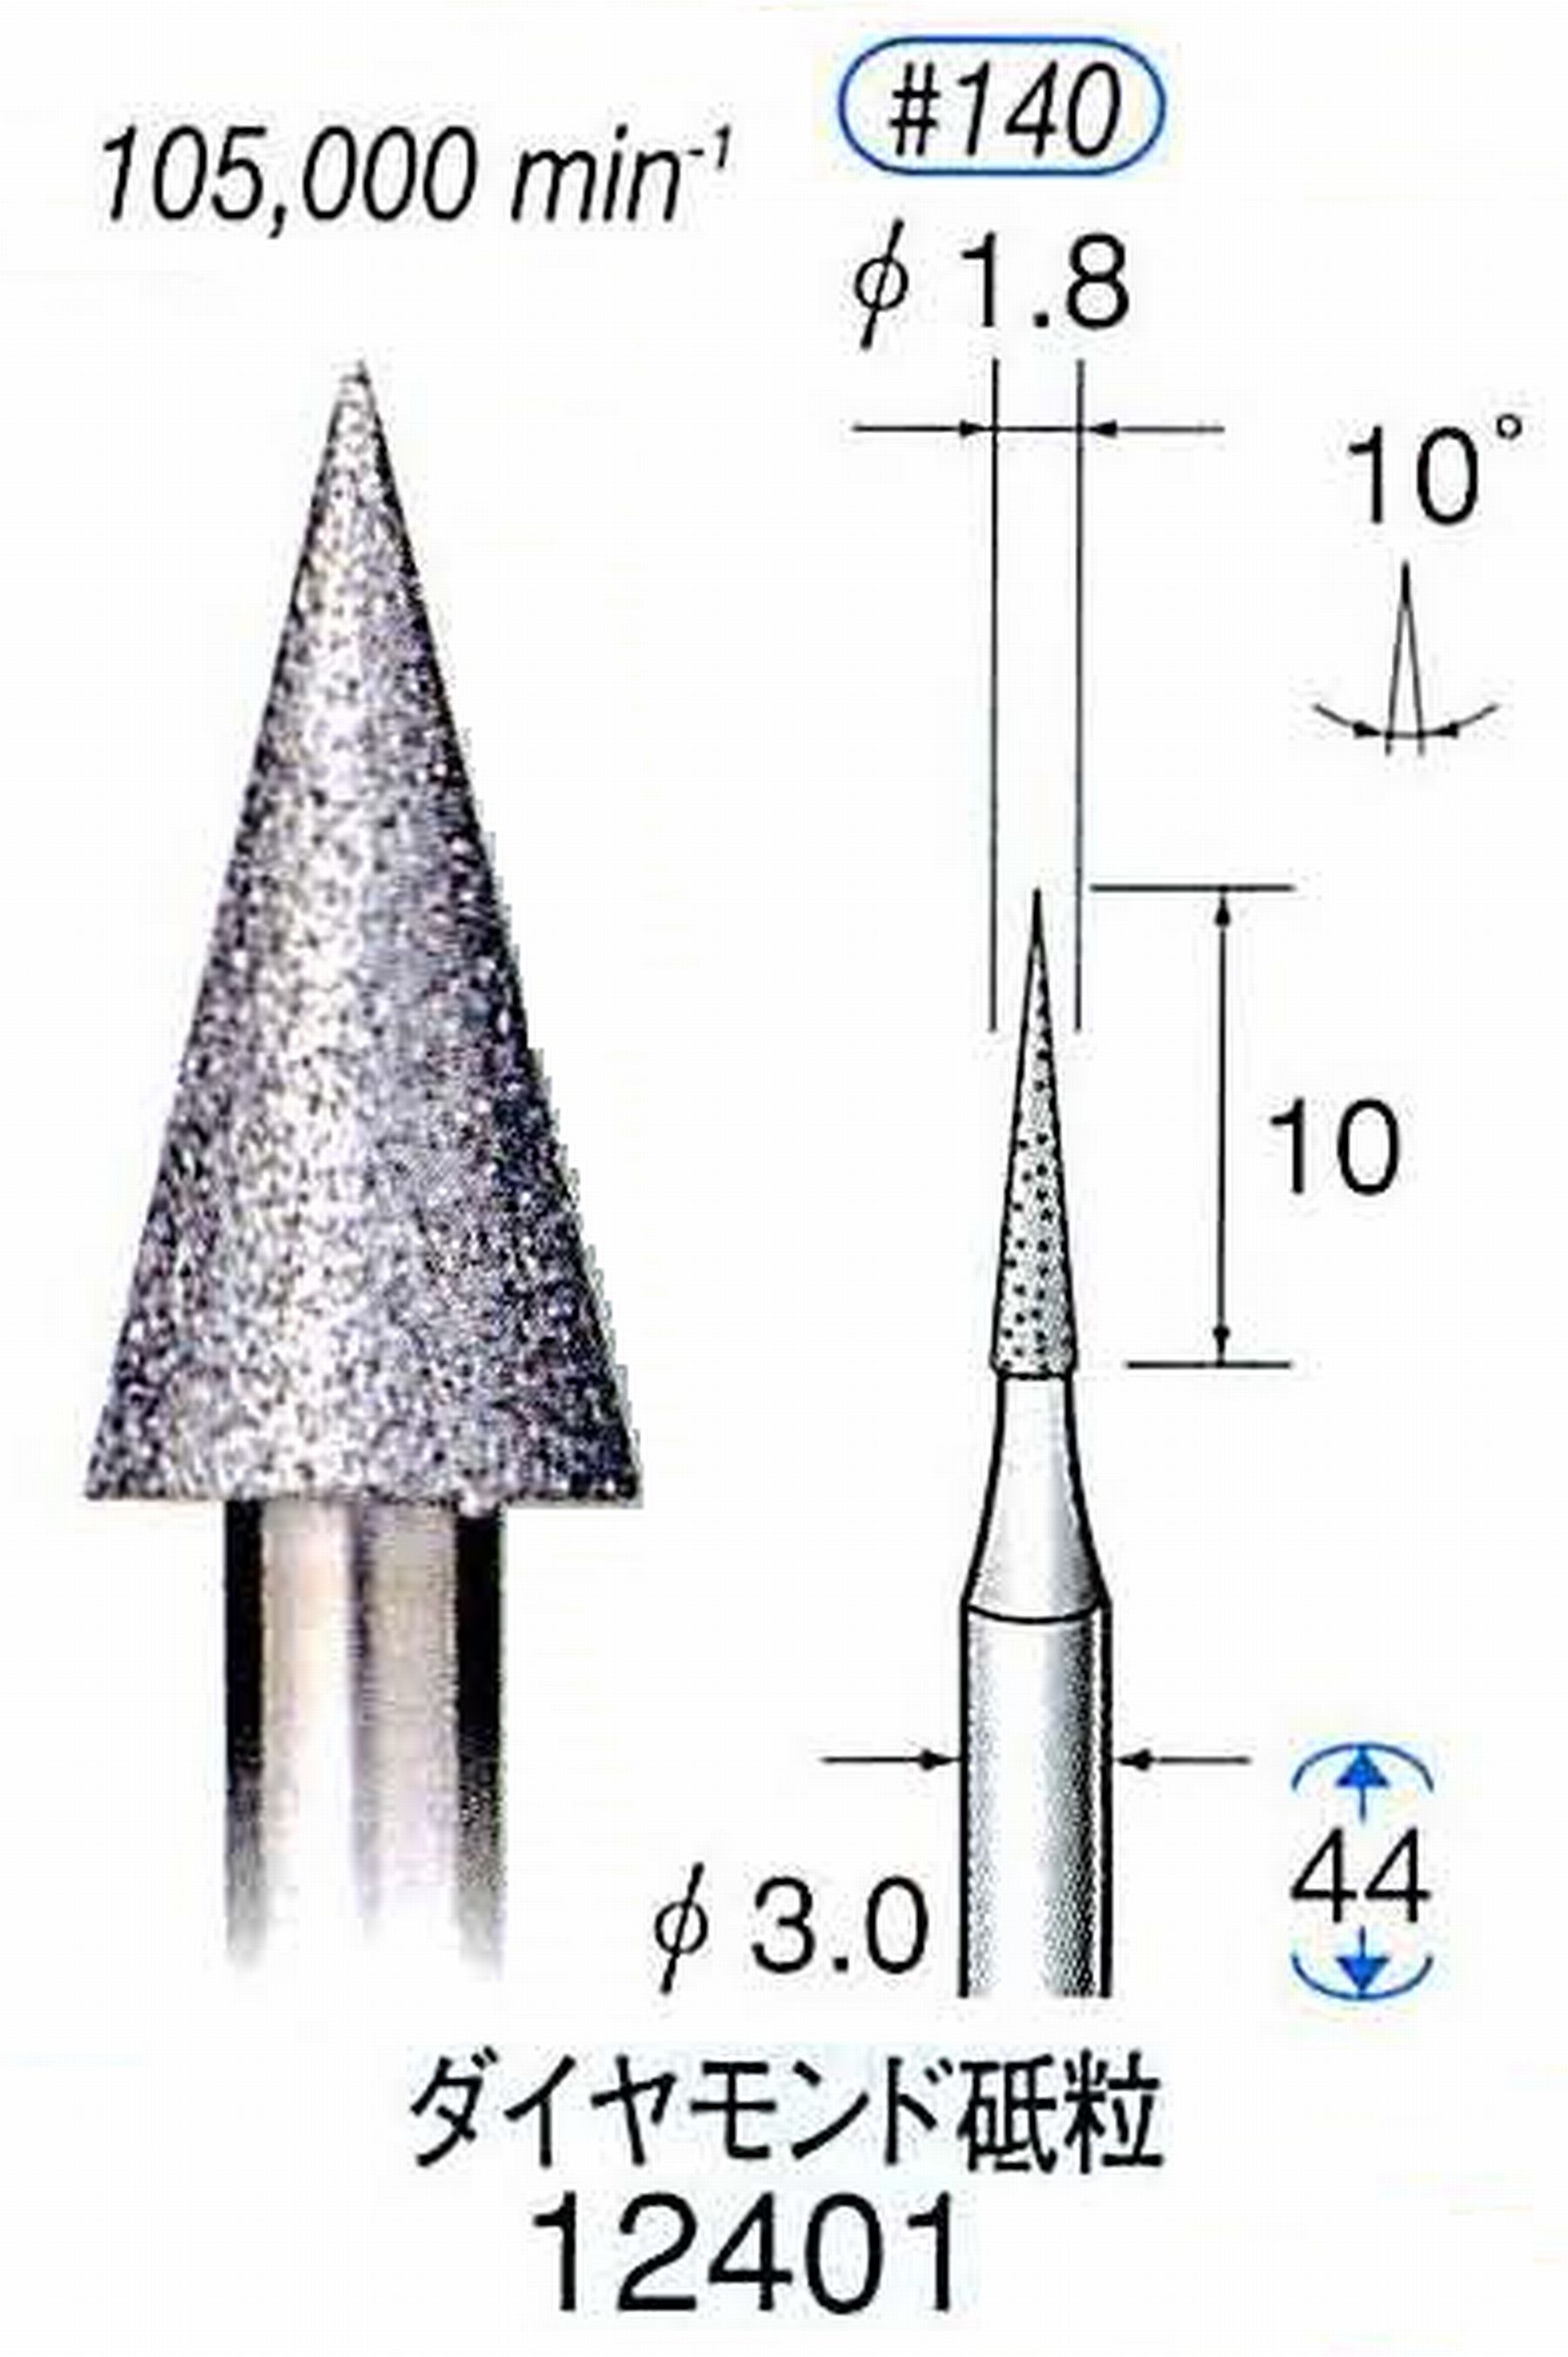 ナカニシ/NAKANISHI 電着ダイヤモンド ダイヤモンド砥粒 軸径(シャンク)φ3.0mm 12401